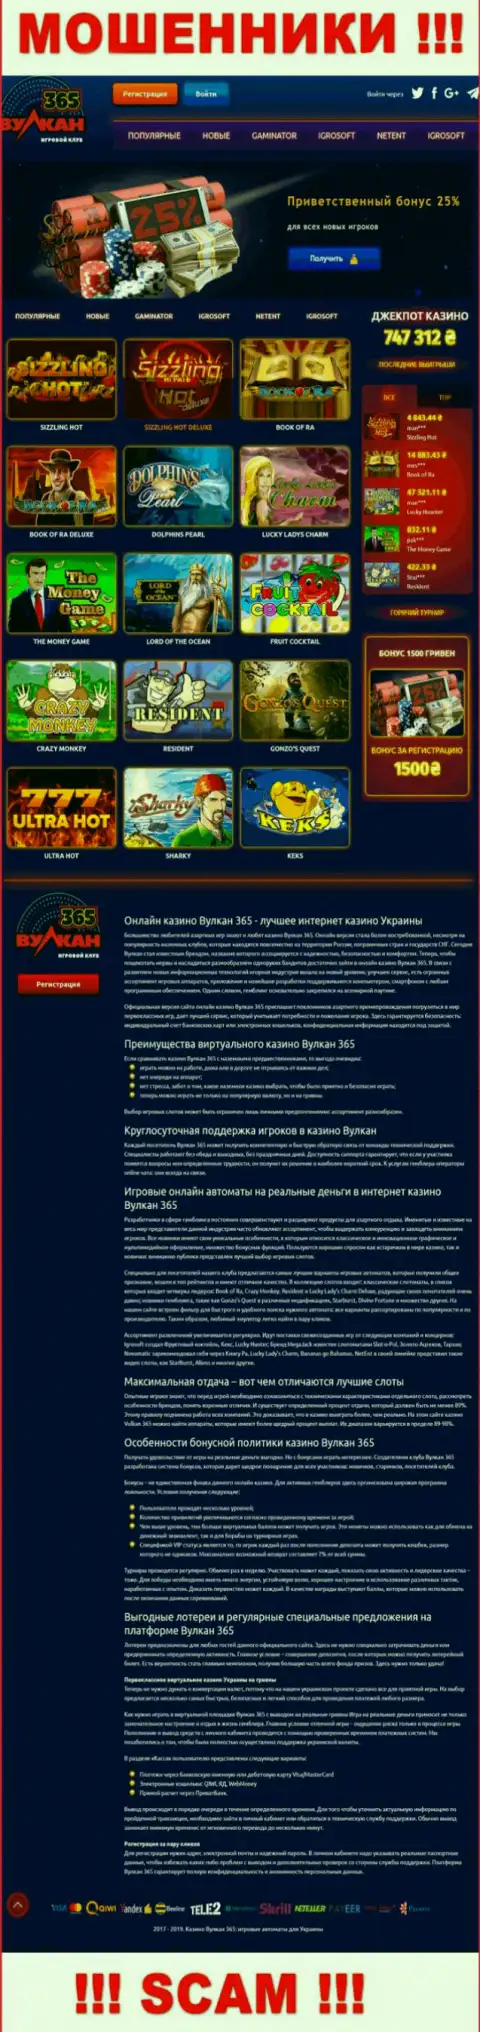 Официальный сайт Vulkan 365 - яркая страница для привлечения жертв